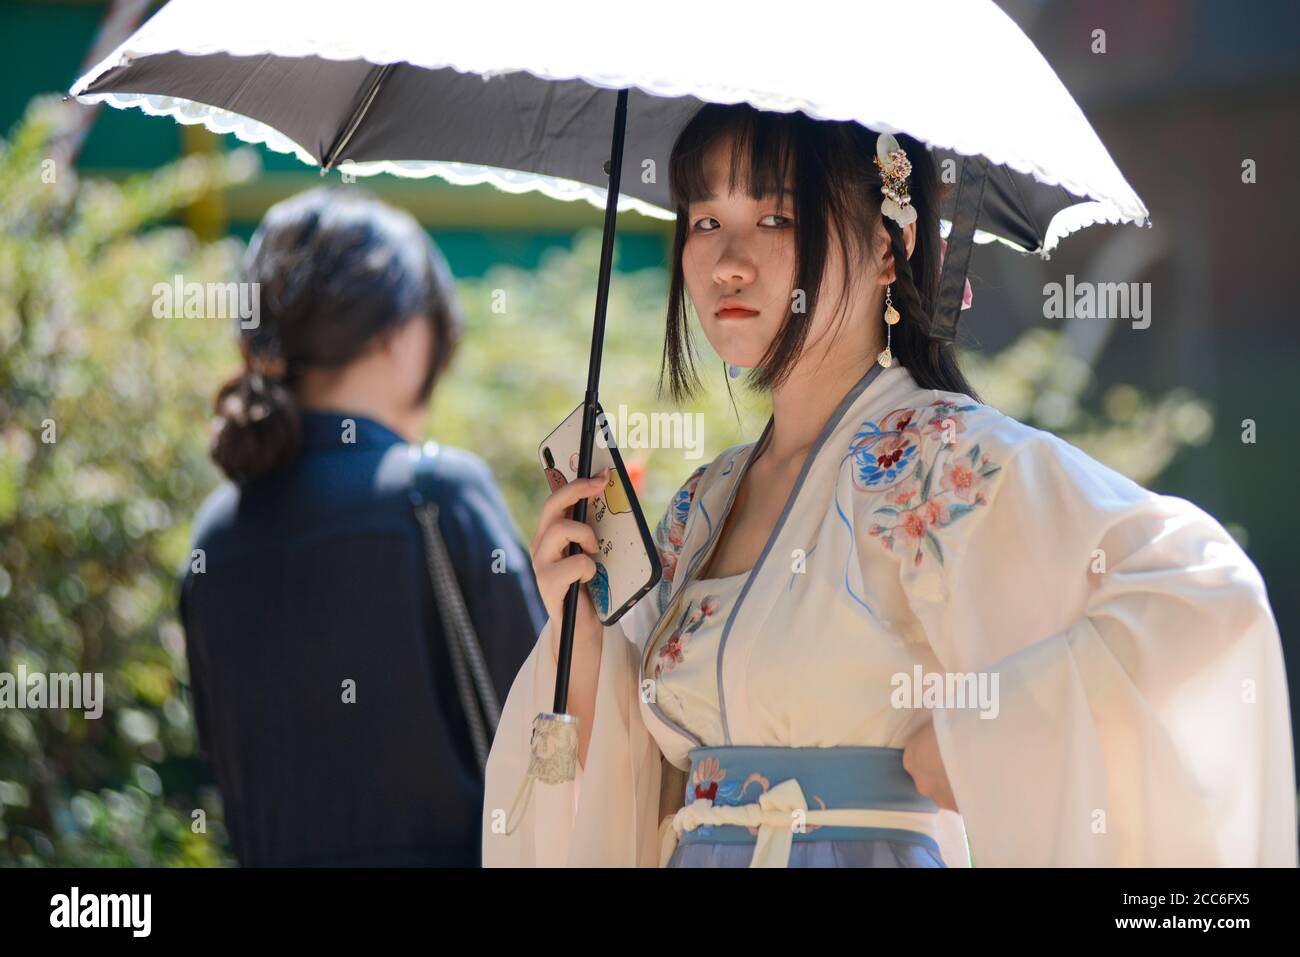 Ein chinesisches junges Mädchen, das mit traditioneller Kleidung und Regenschirm gekleidet ist und ihr Handy hält. Jianghan Road, Wuhan, China Stockfoto